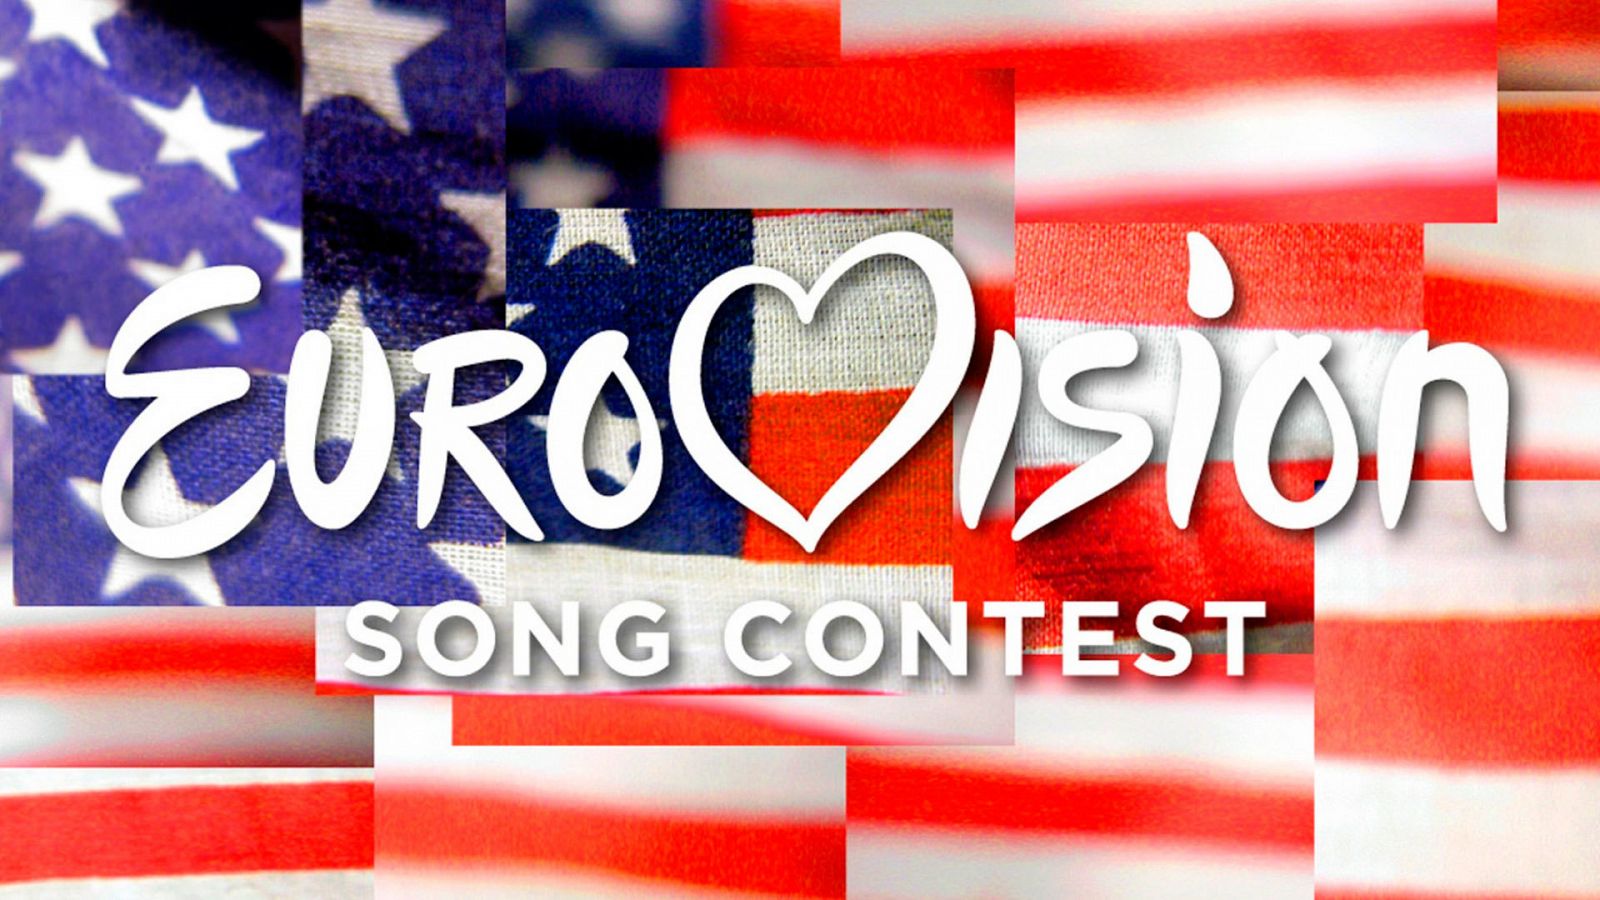  The American Song Contest, la versión estadounidense de Eurovisión, se retrasa a 2022